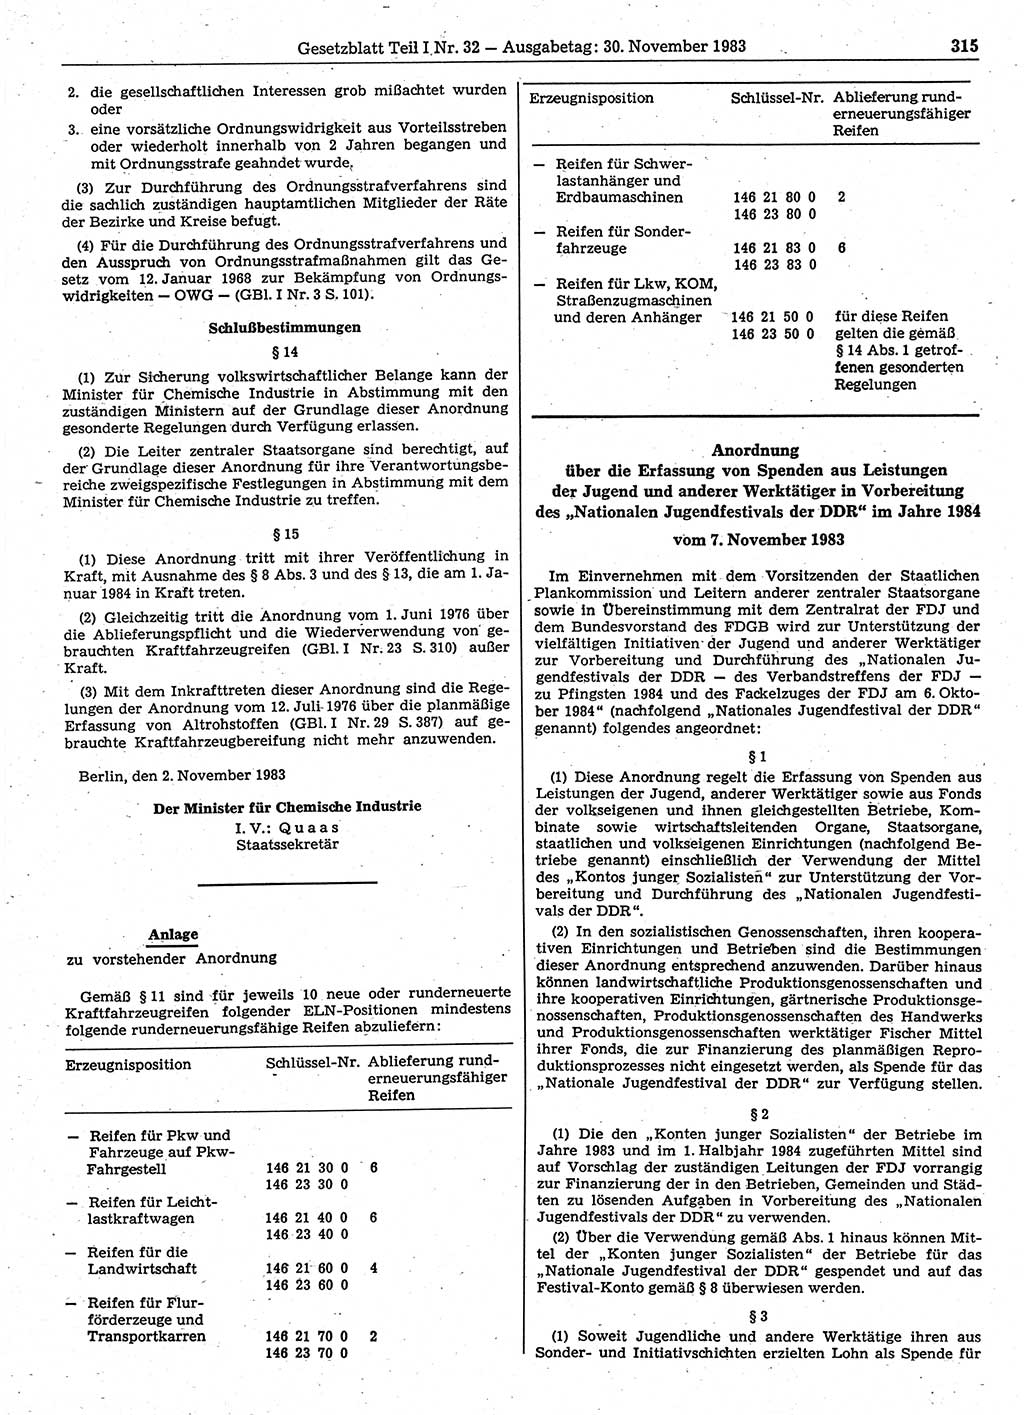 Gesetzblatt (GBl.) der Deutschen Demokratischen Republik (DDR) Teil Ⅰ 1983, Seite 315 (GBl. DDR Ⅰ 1983, S. 315)